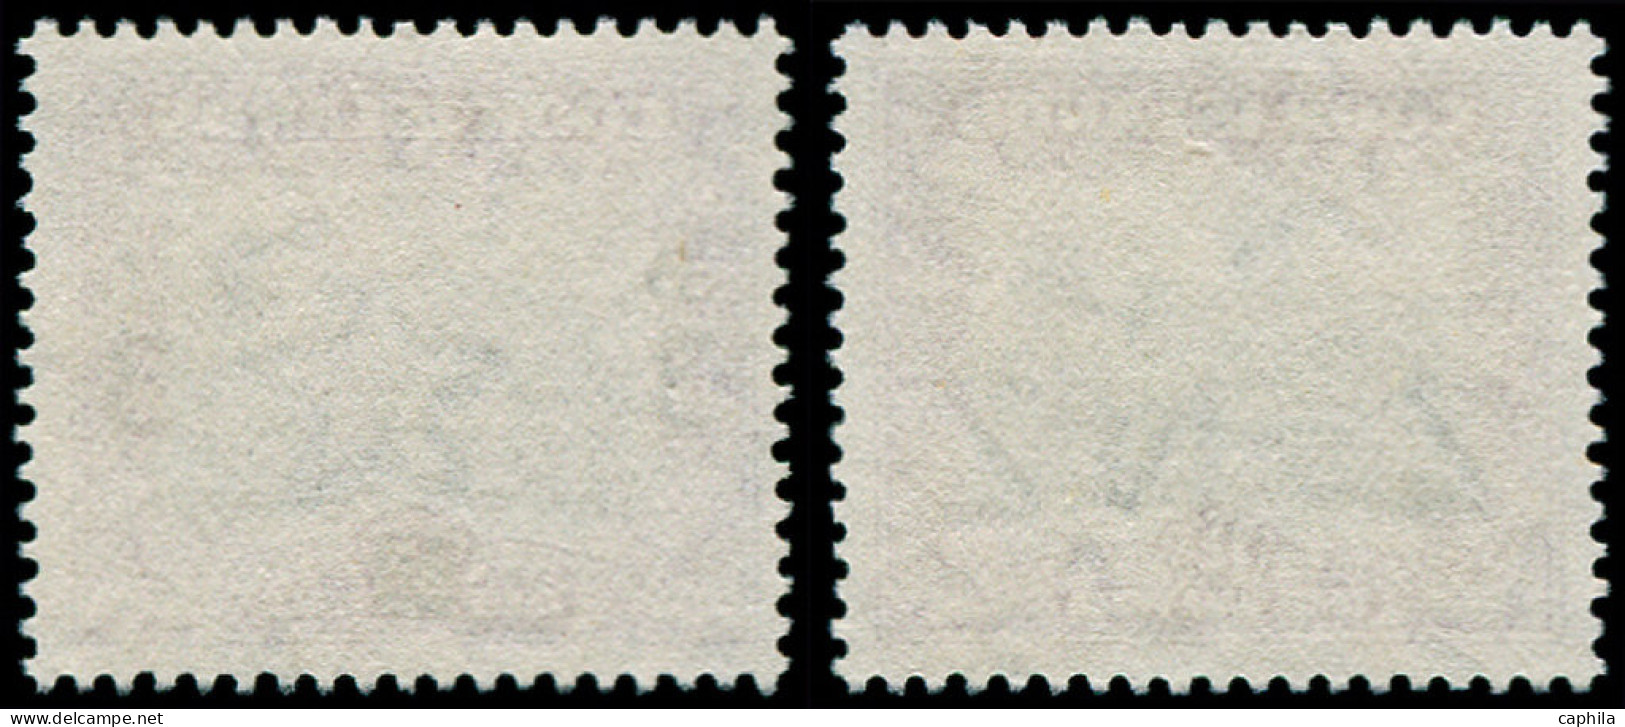 (*) COOK - Poste - 62, Non émis Sans Surcharge 1.50p. Violet & Noir (+ Timbre Normal), Non Répertorié Gibbons - Cook Islands